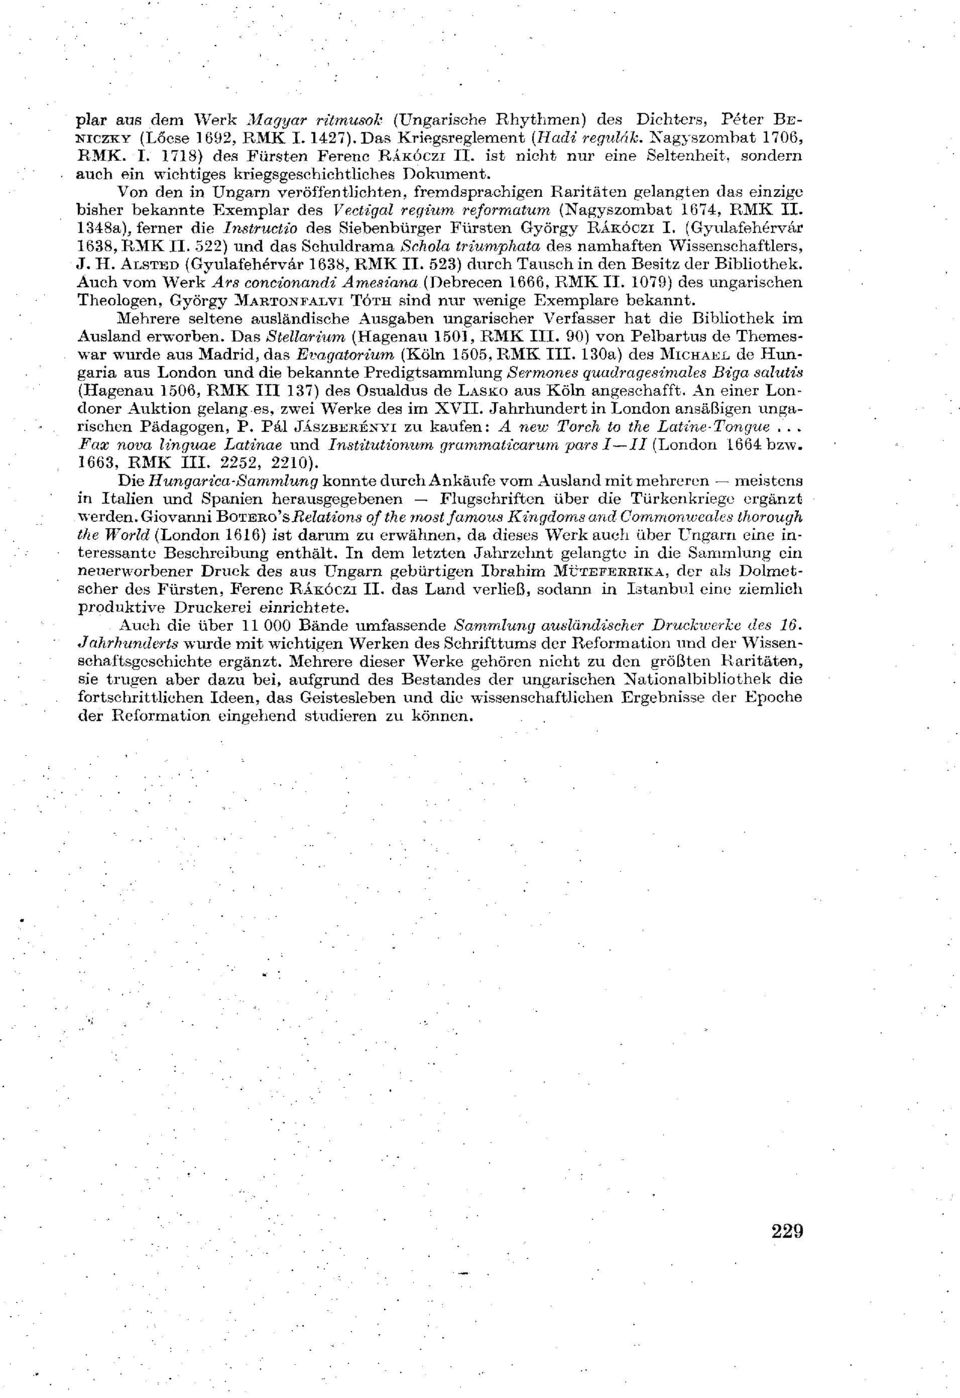 Von den in Ungarn veröffentlichten, fremdsprachigen Raritäten gelangten das einzige bisher bekannte Exemplar des Vectigal regium reformatum (Nagyszombat 1674, RMK II.